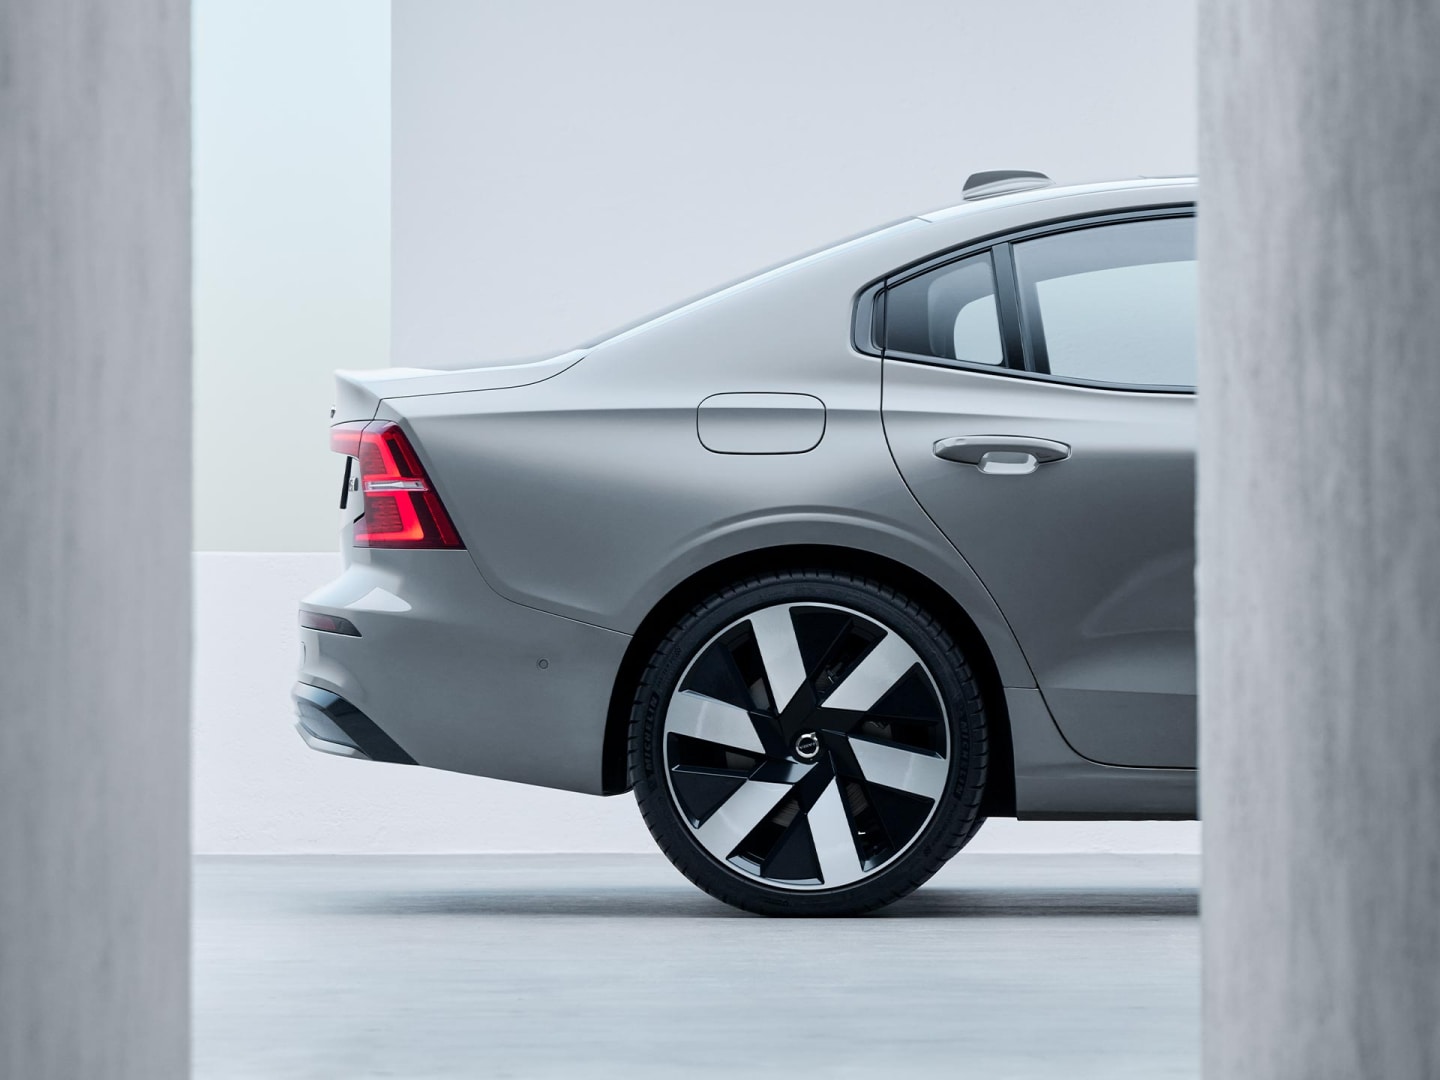 Design aérodynamique des roues de la Volvo S60 hybride rechargeable.